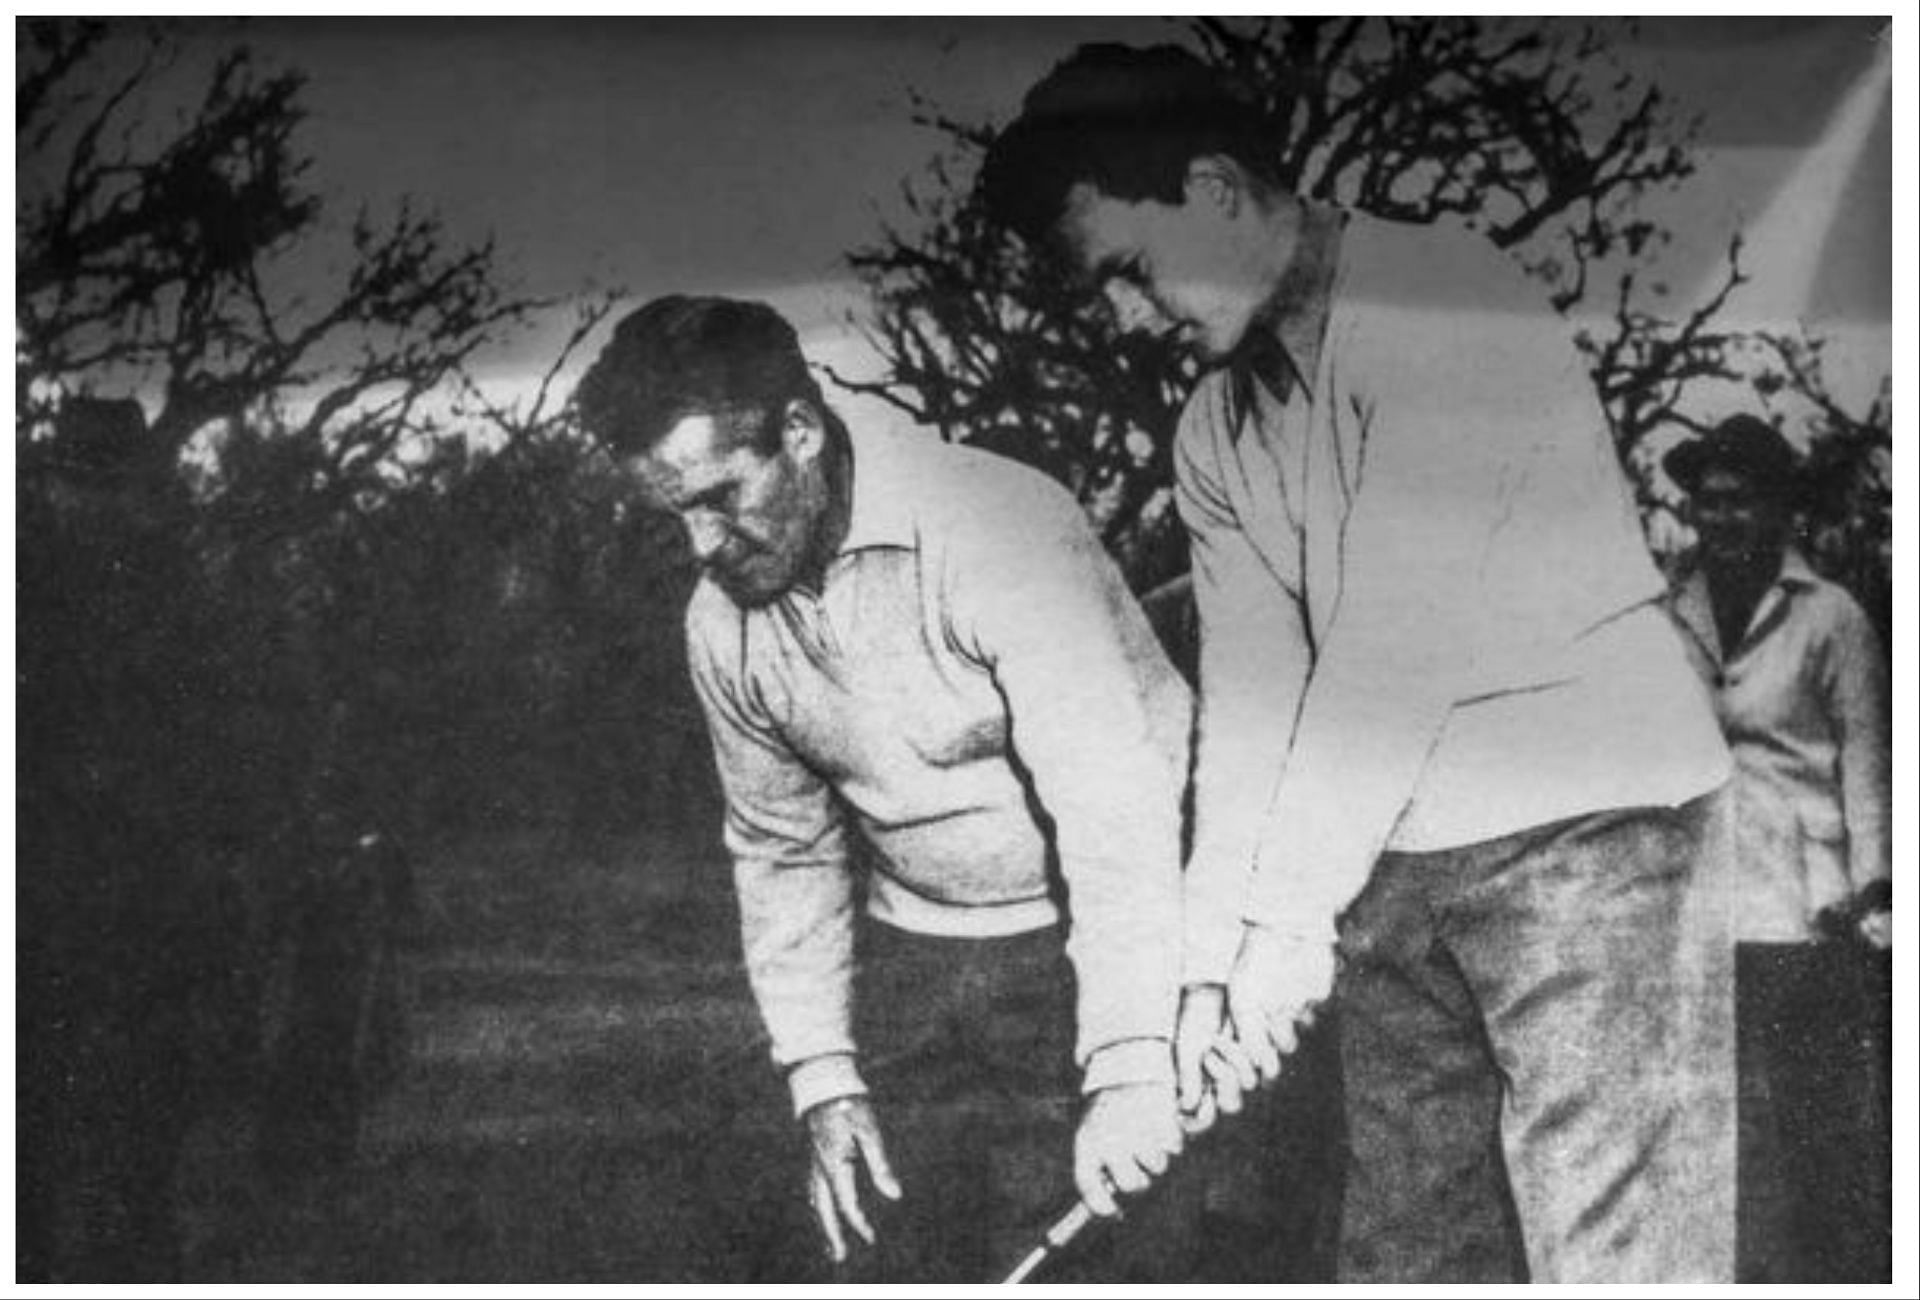 Jack Burke Sr and Jack Burke Jr (Image via Texas Golf Hall of Fame)